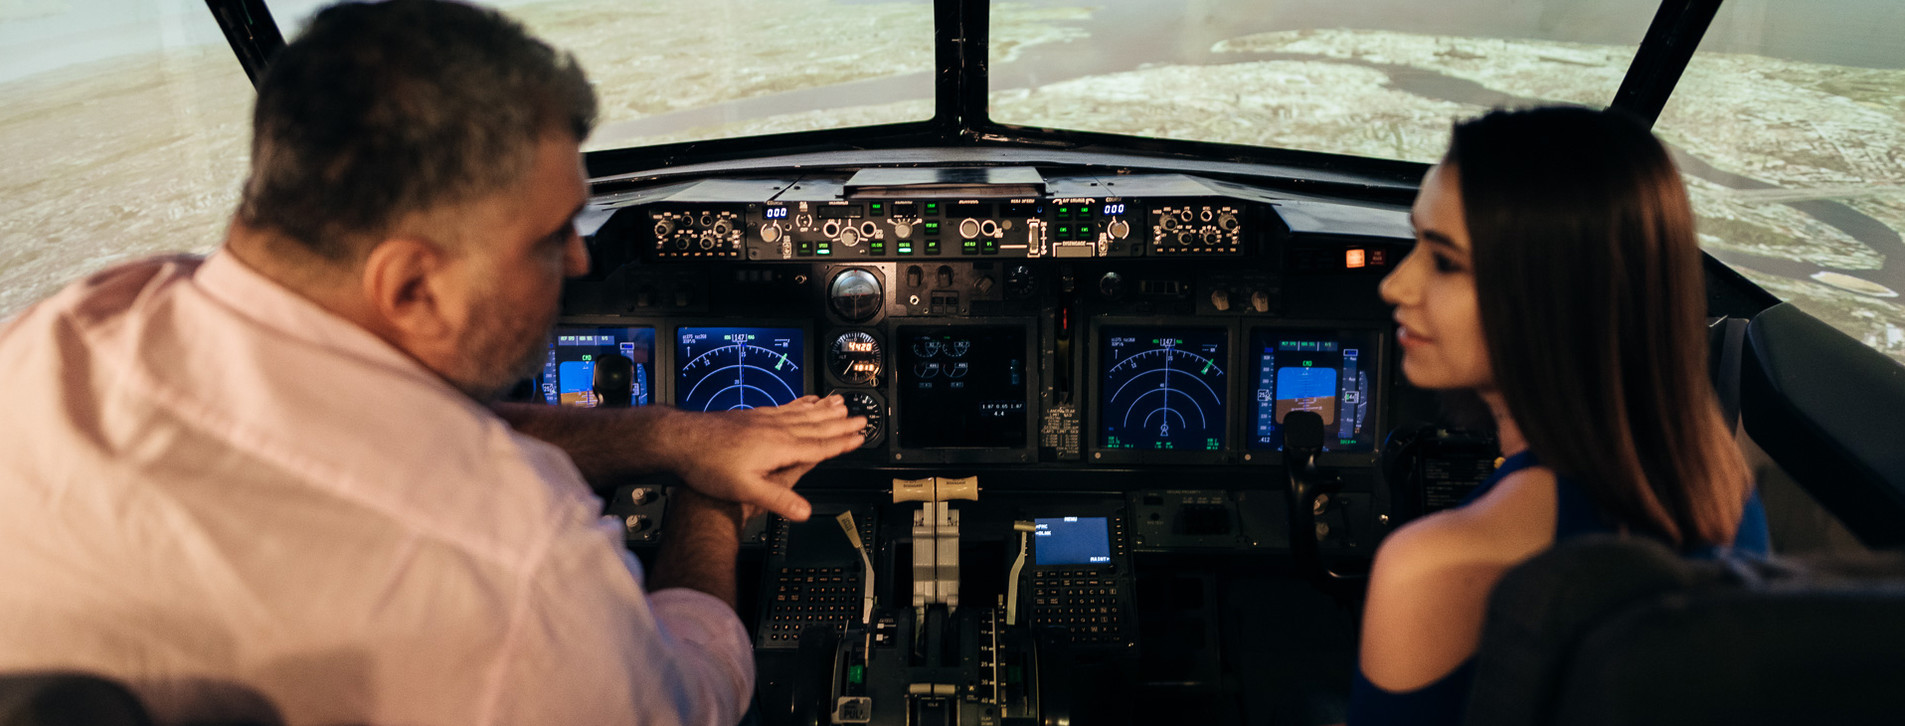 Fotoğraf 1 - İki Kişi için Boeing 737 Uçuş Simülatörü Deneyimi